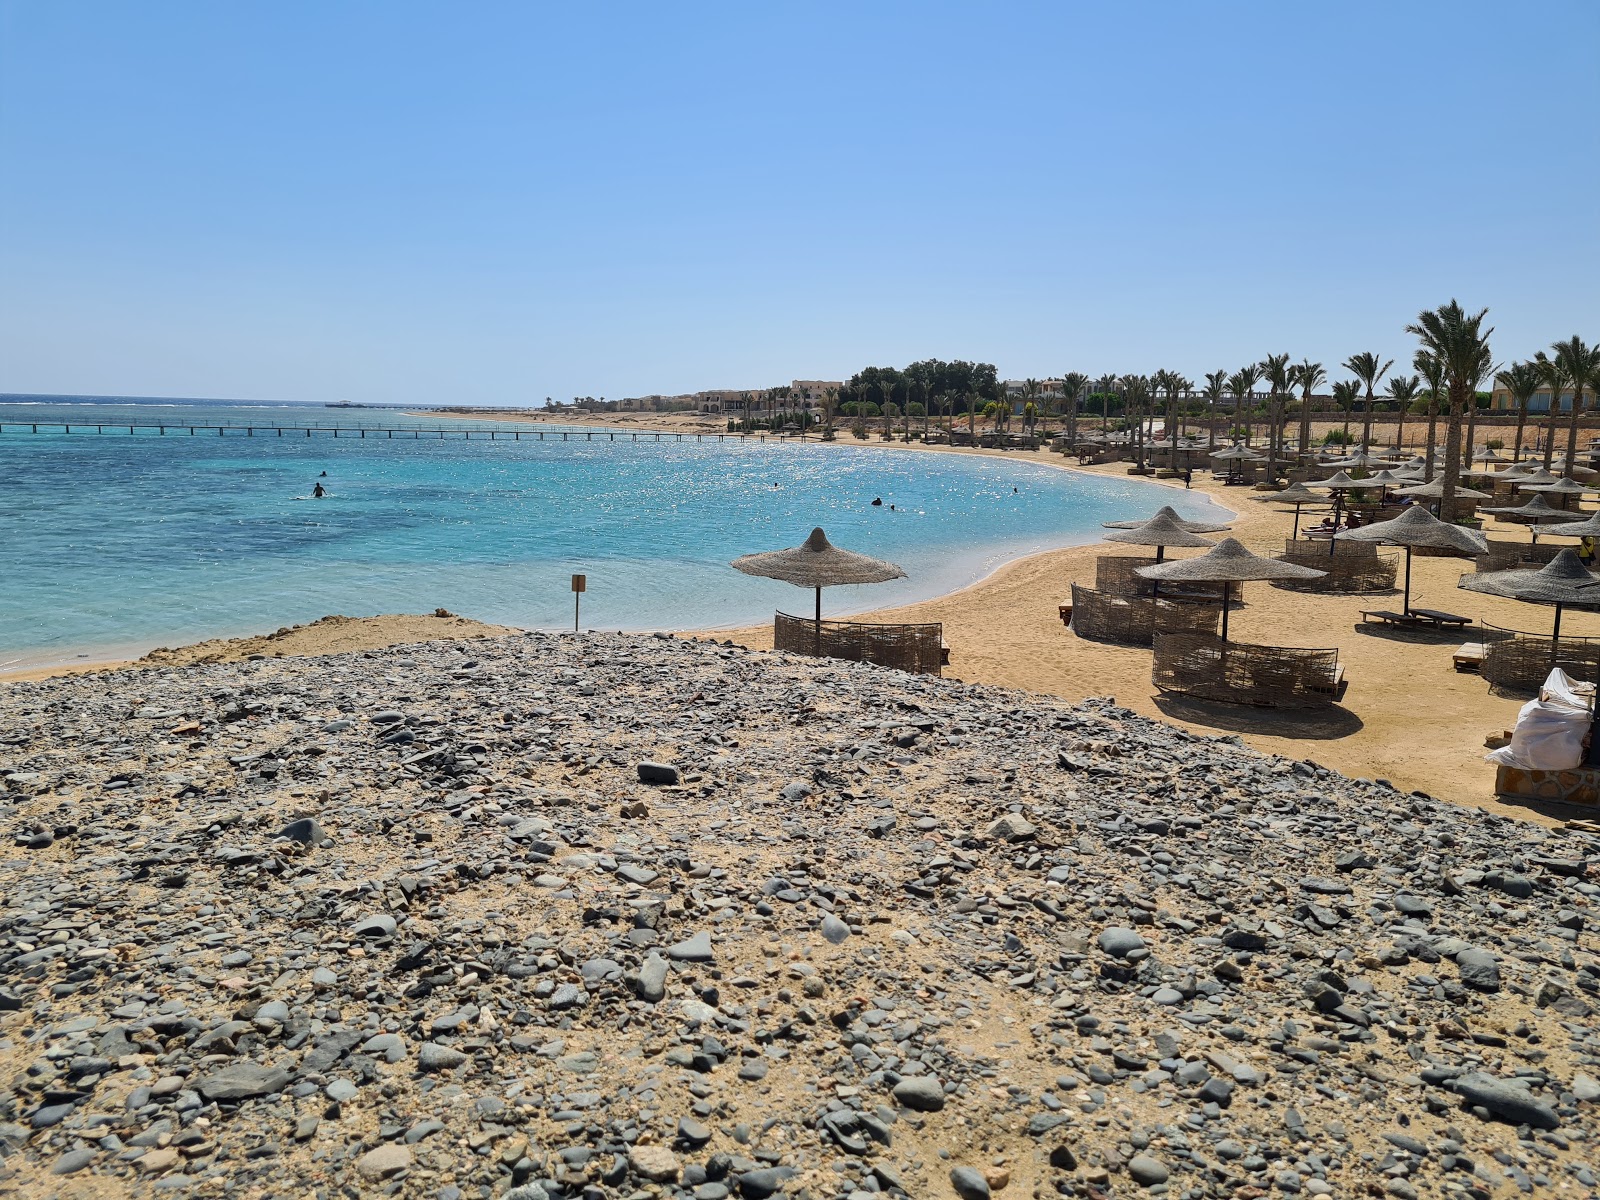 Foto de Playa del Elphistone Resort Marsa Alam - lugar popular entre los conocedores del relax